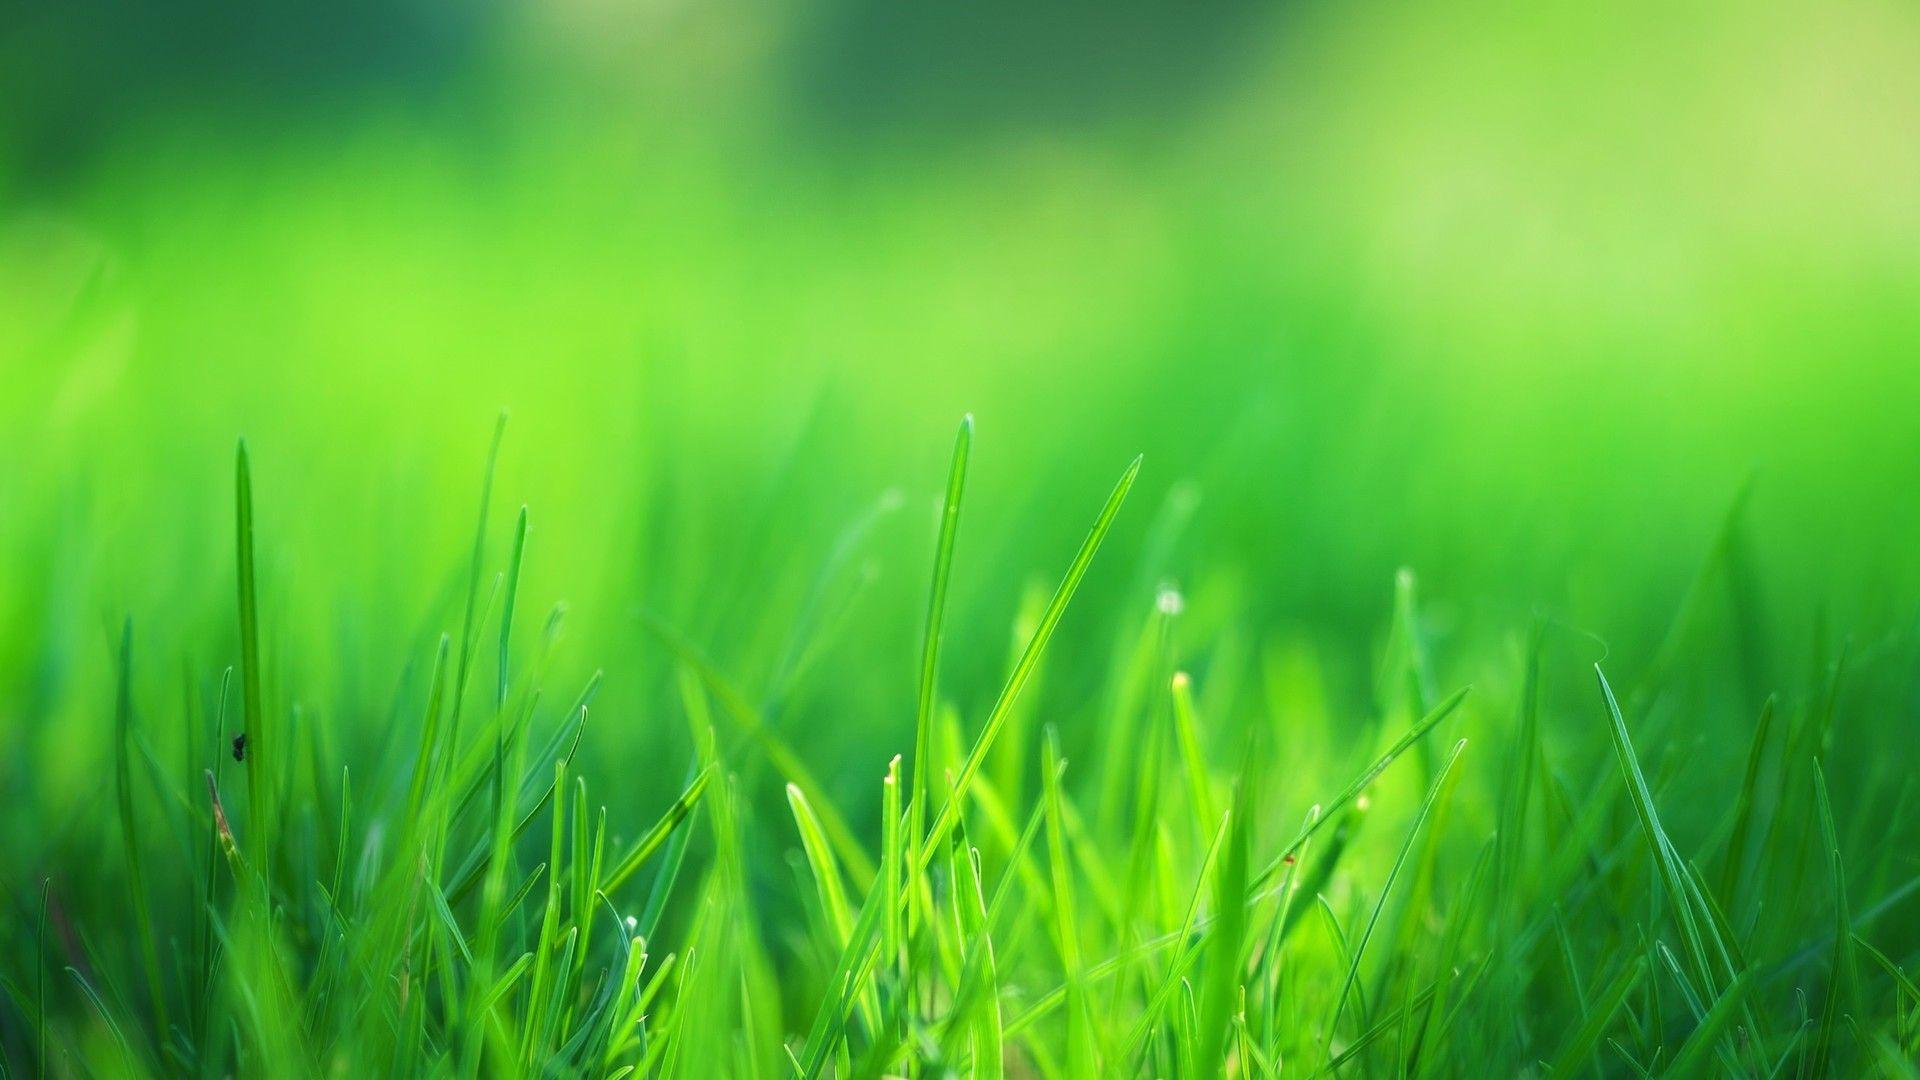 Hình nền đẹp về cỏ xanh sẽ khiến cho màn hình của bạn trở nên sống động và đầy màu sắc hơn. Với những hình ảnh về cỏ xanh, bạn sẽ cảm thấy nhẹ nhàng và thư thái trong công việc hàng ngày của mình. Hãy tải ngay hình nền của chúng tôi để cảm nhận sự tươi mới trong từng giây phút!